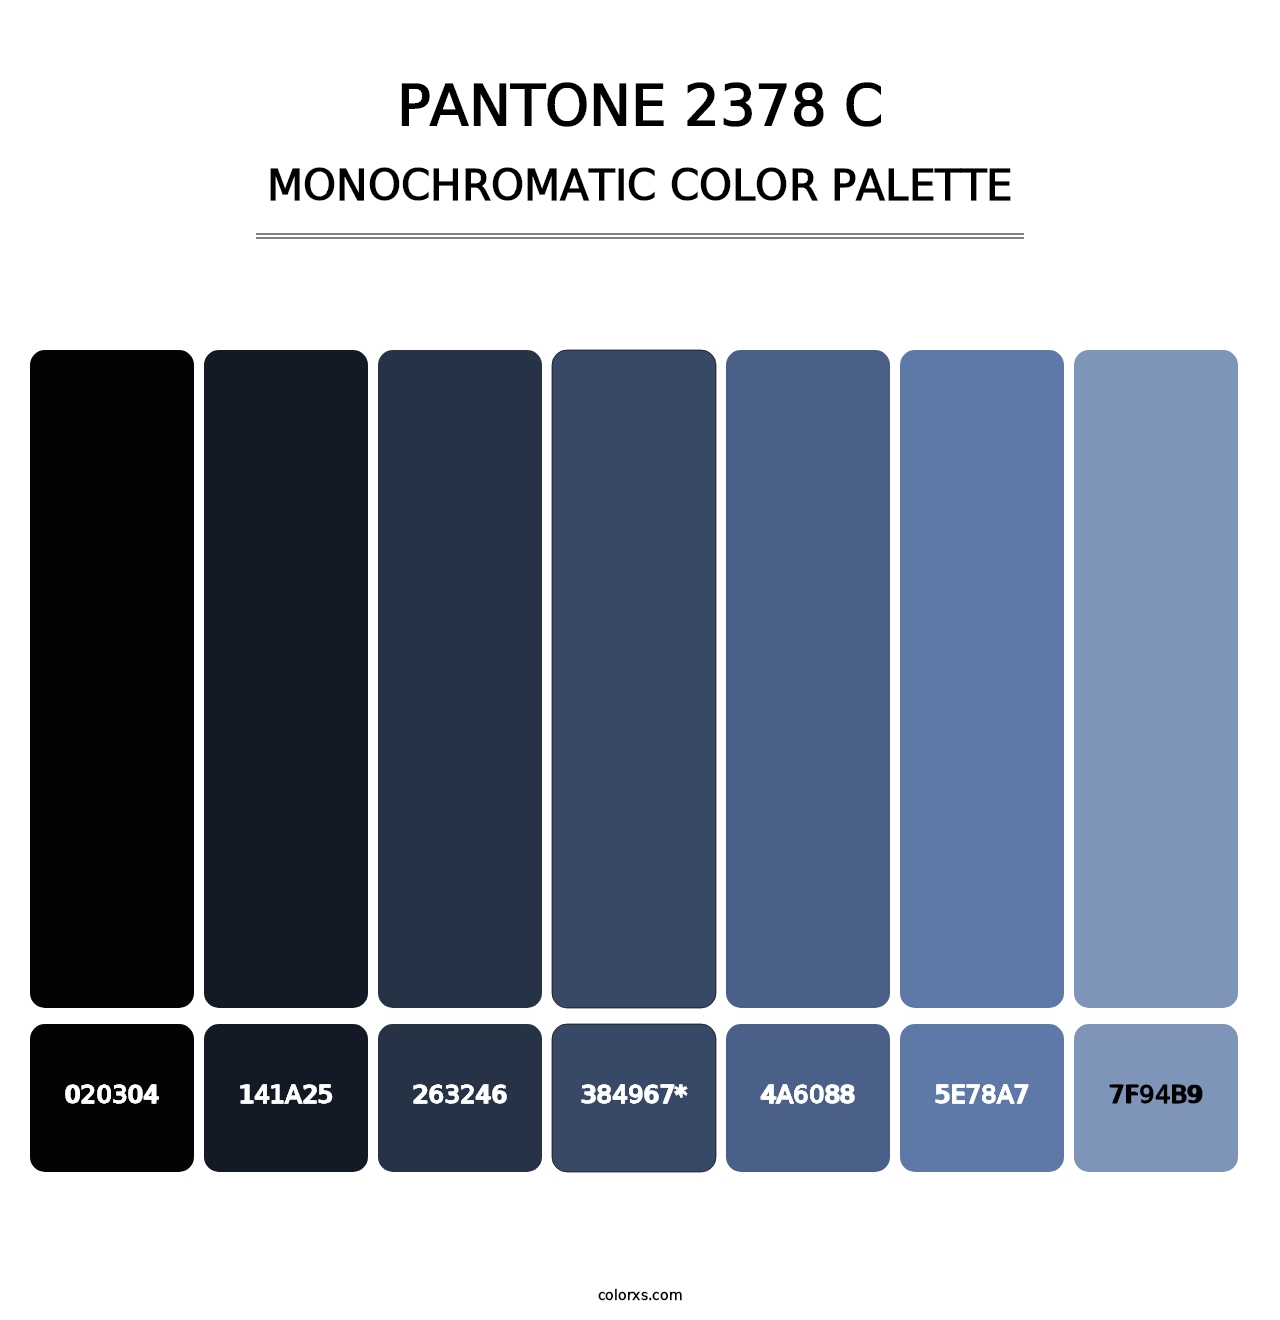 PANTONE 2378 C - Monochromatic Color Palette